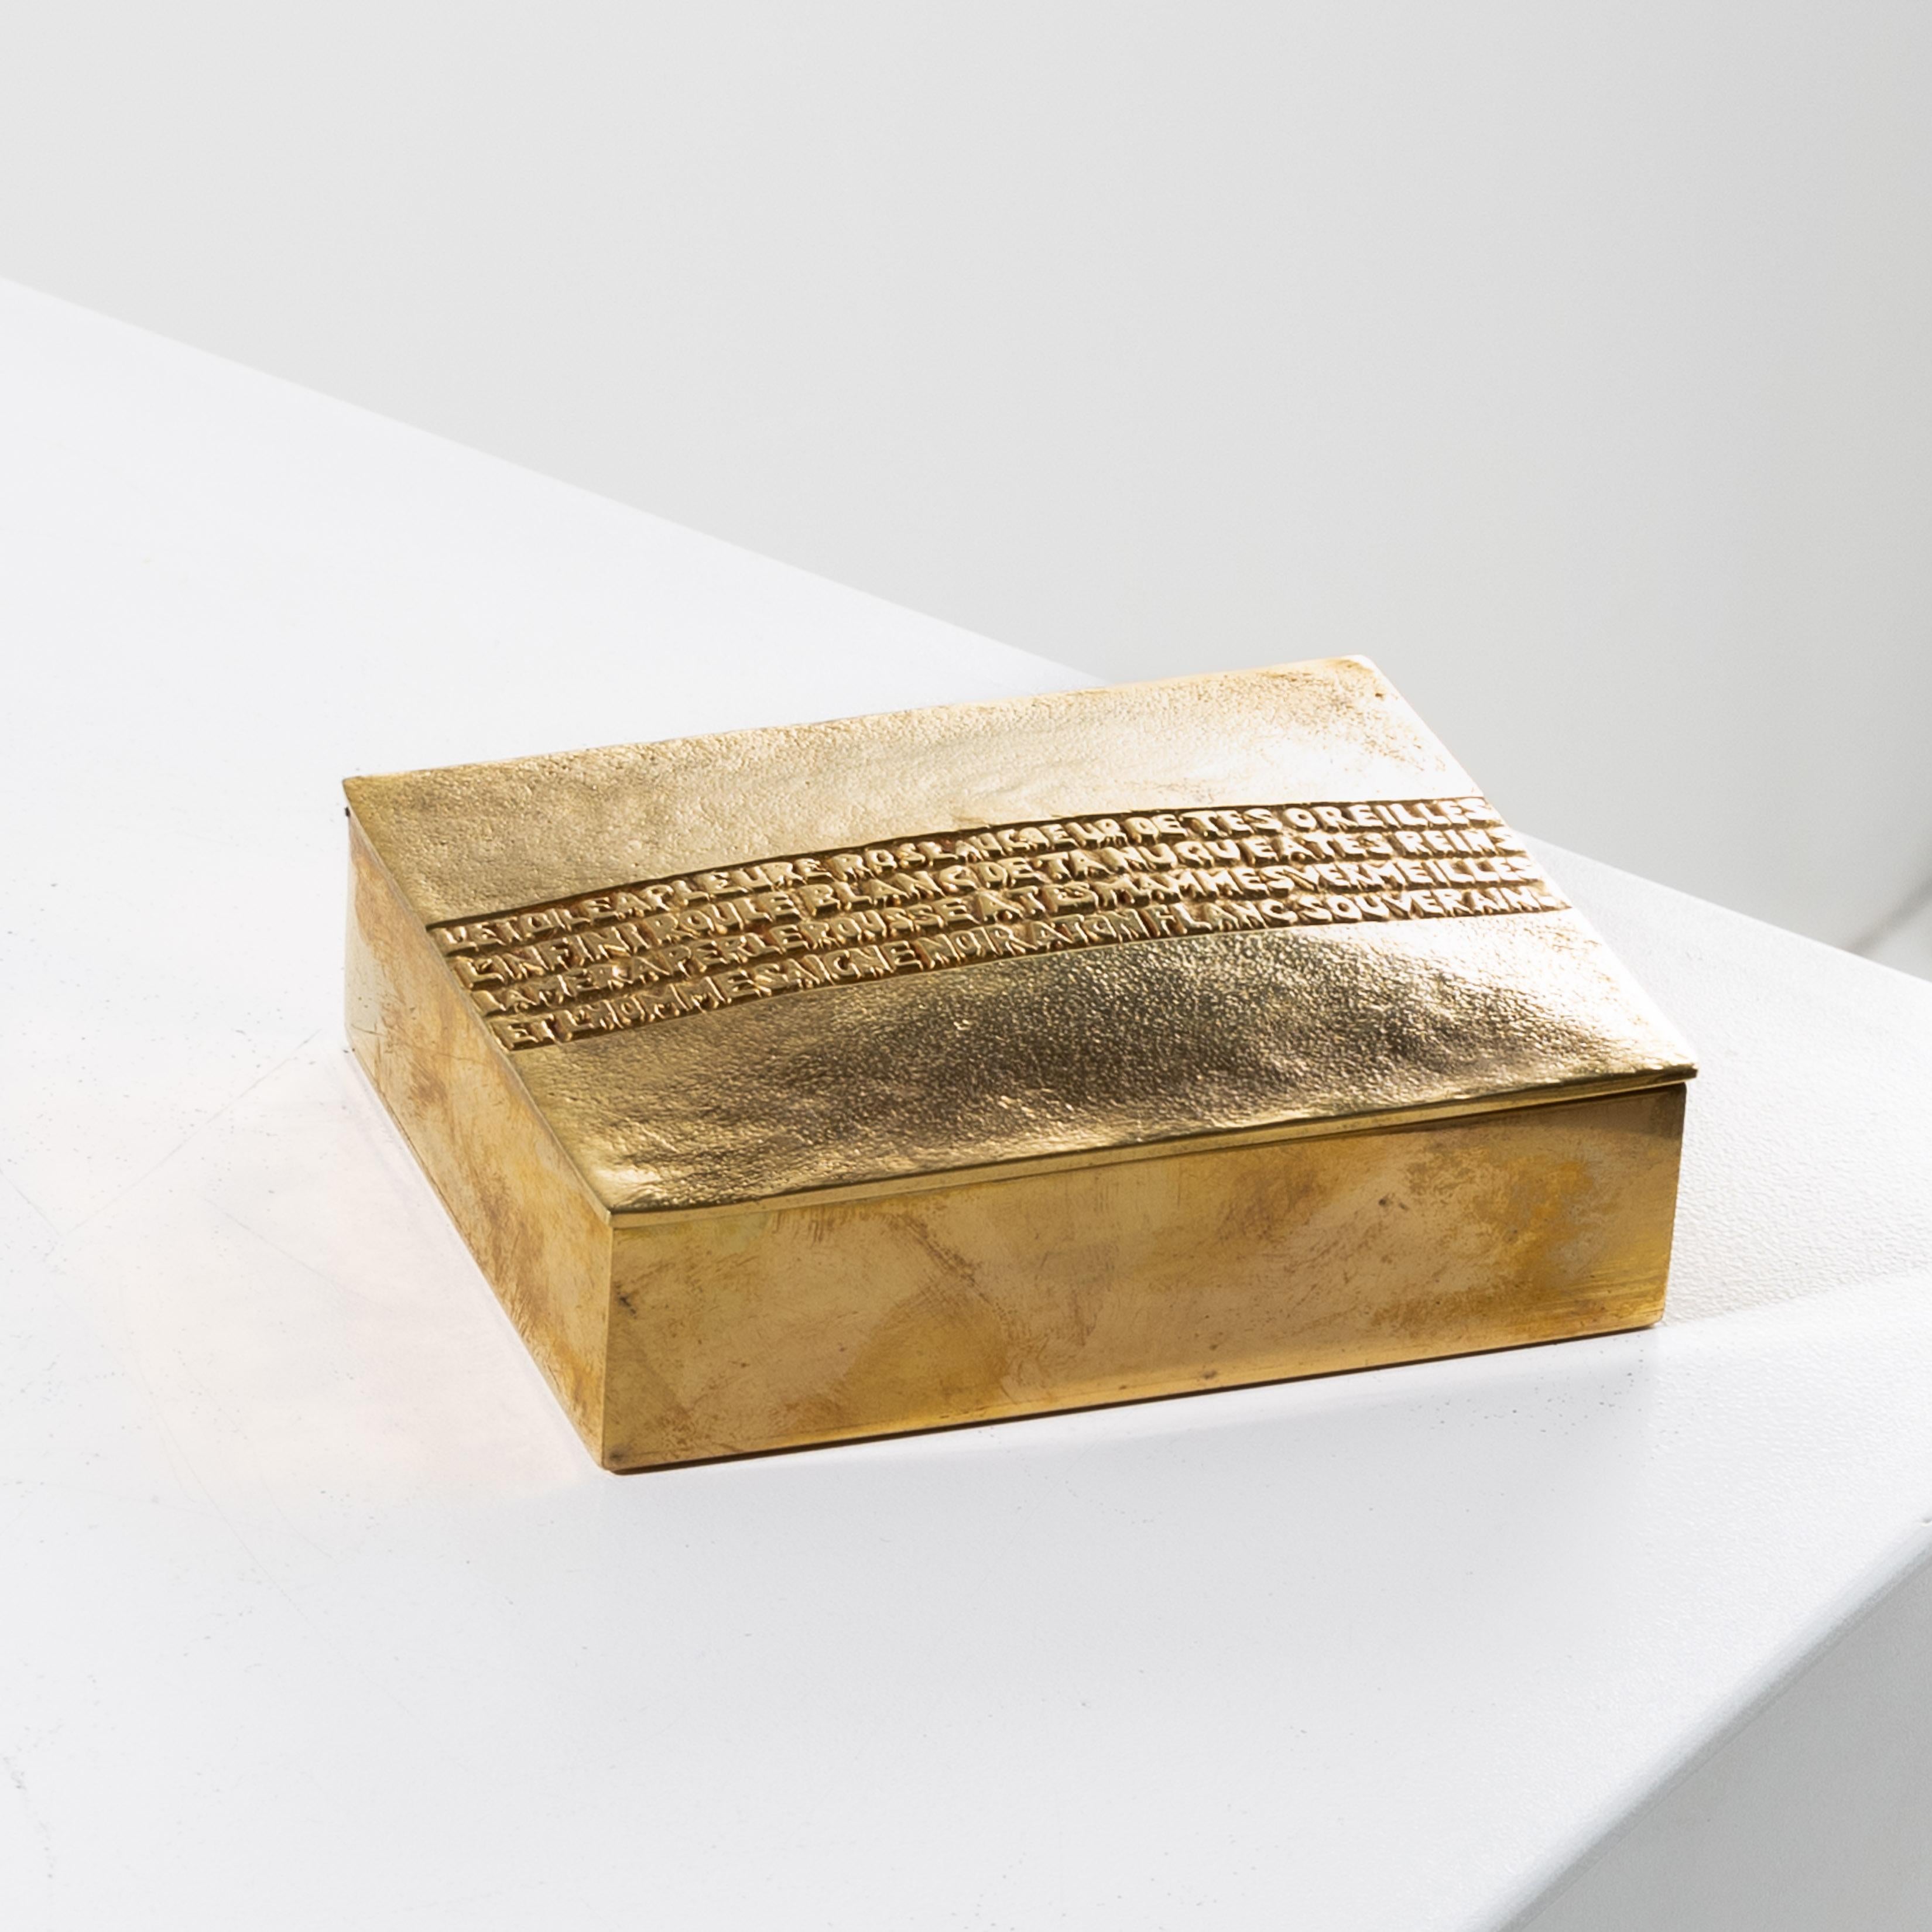 L’étoile a pleuré rose by Line Vautrin.
Rare gilded bronze box, with a convex lid adorned with a poem by Arthur Rimbaud (1854-1891).
This poem is taken from “Poésies” (1870-1871).
Decor present on the lid:
L’étoile a pleuré rose au coeur de tes